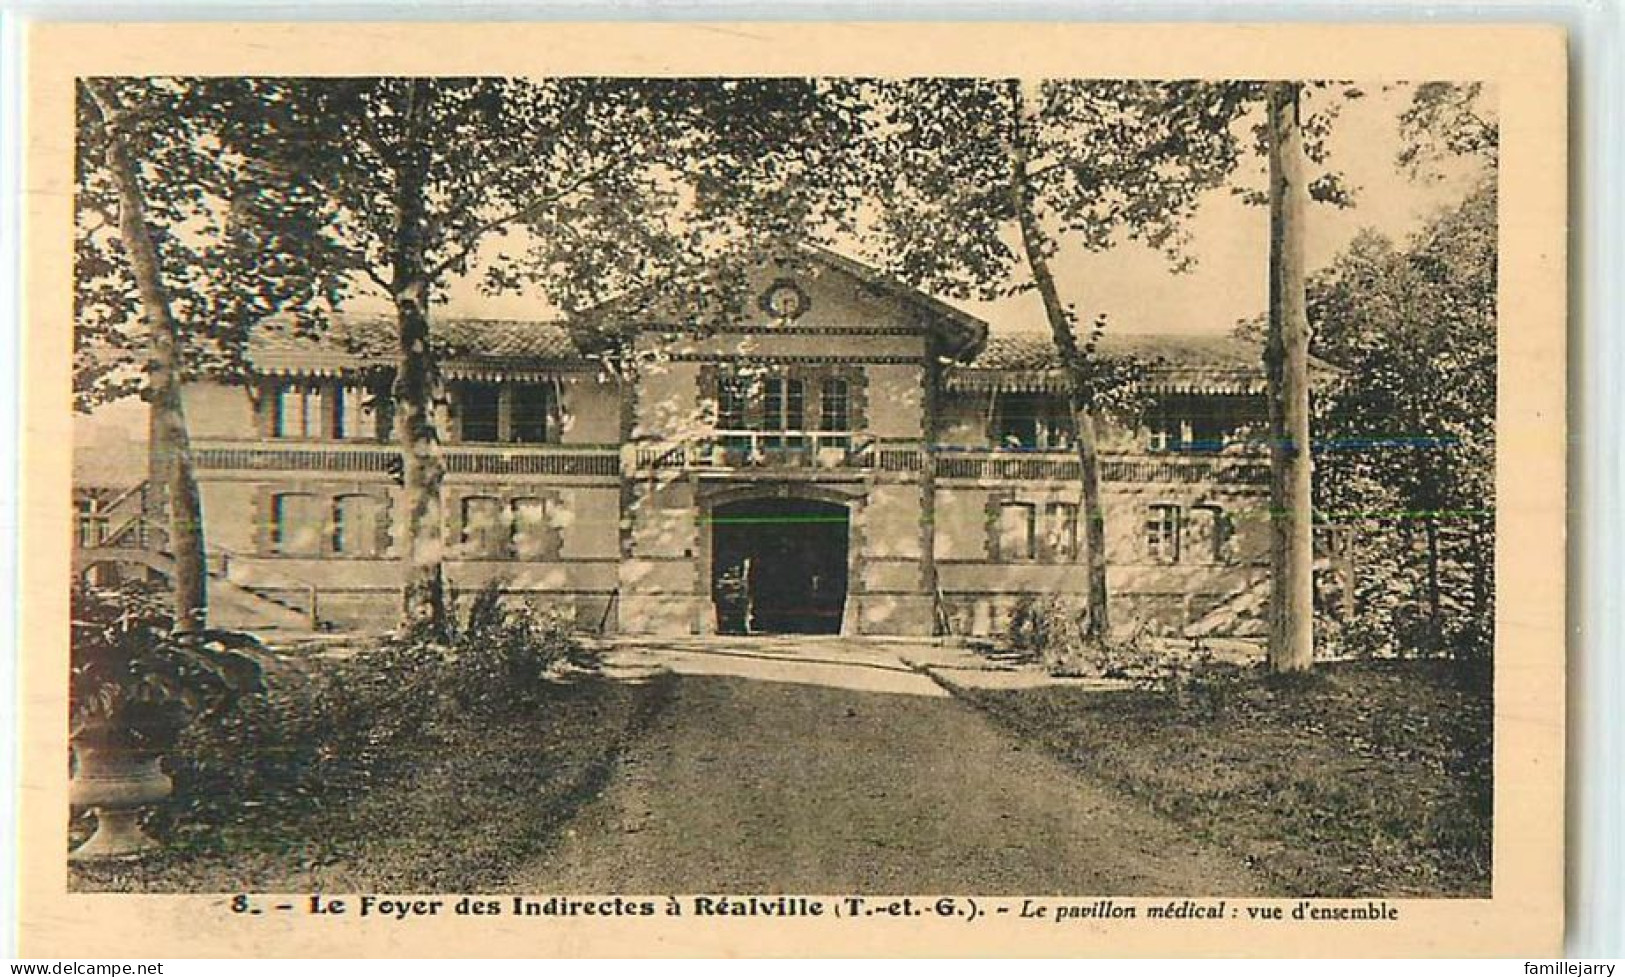 17608 - REALVILLE - LE FOYER DES INDIRECTES A / LE PAVILLON MEDICAL - VUE D ENSEMBLE - Realville